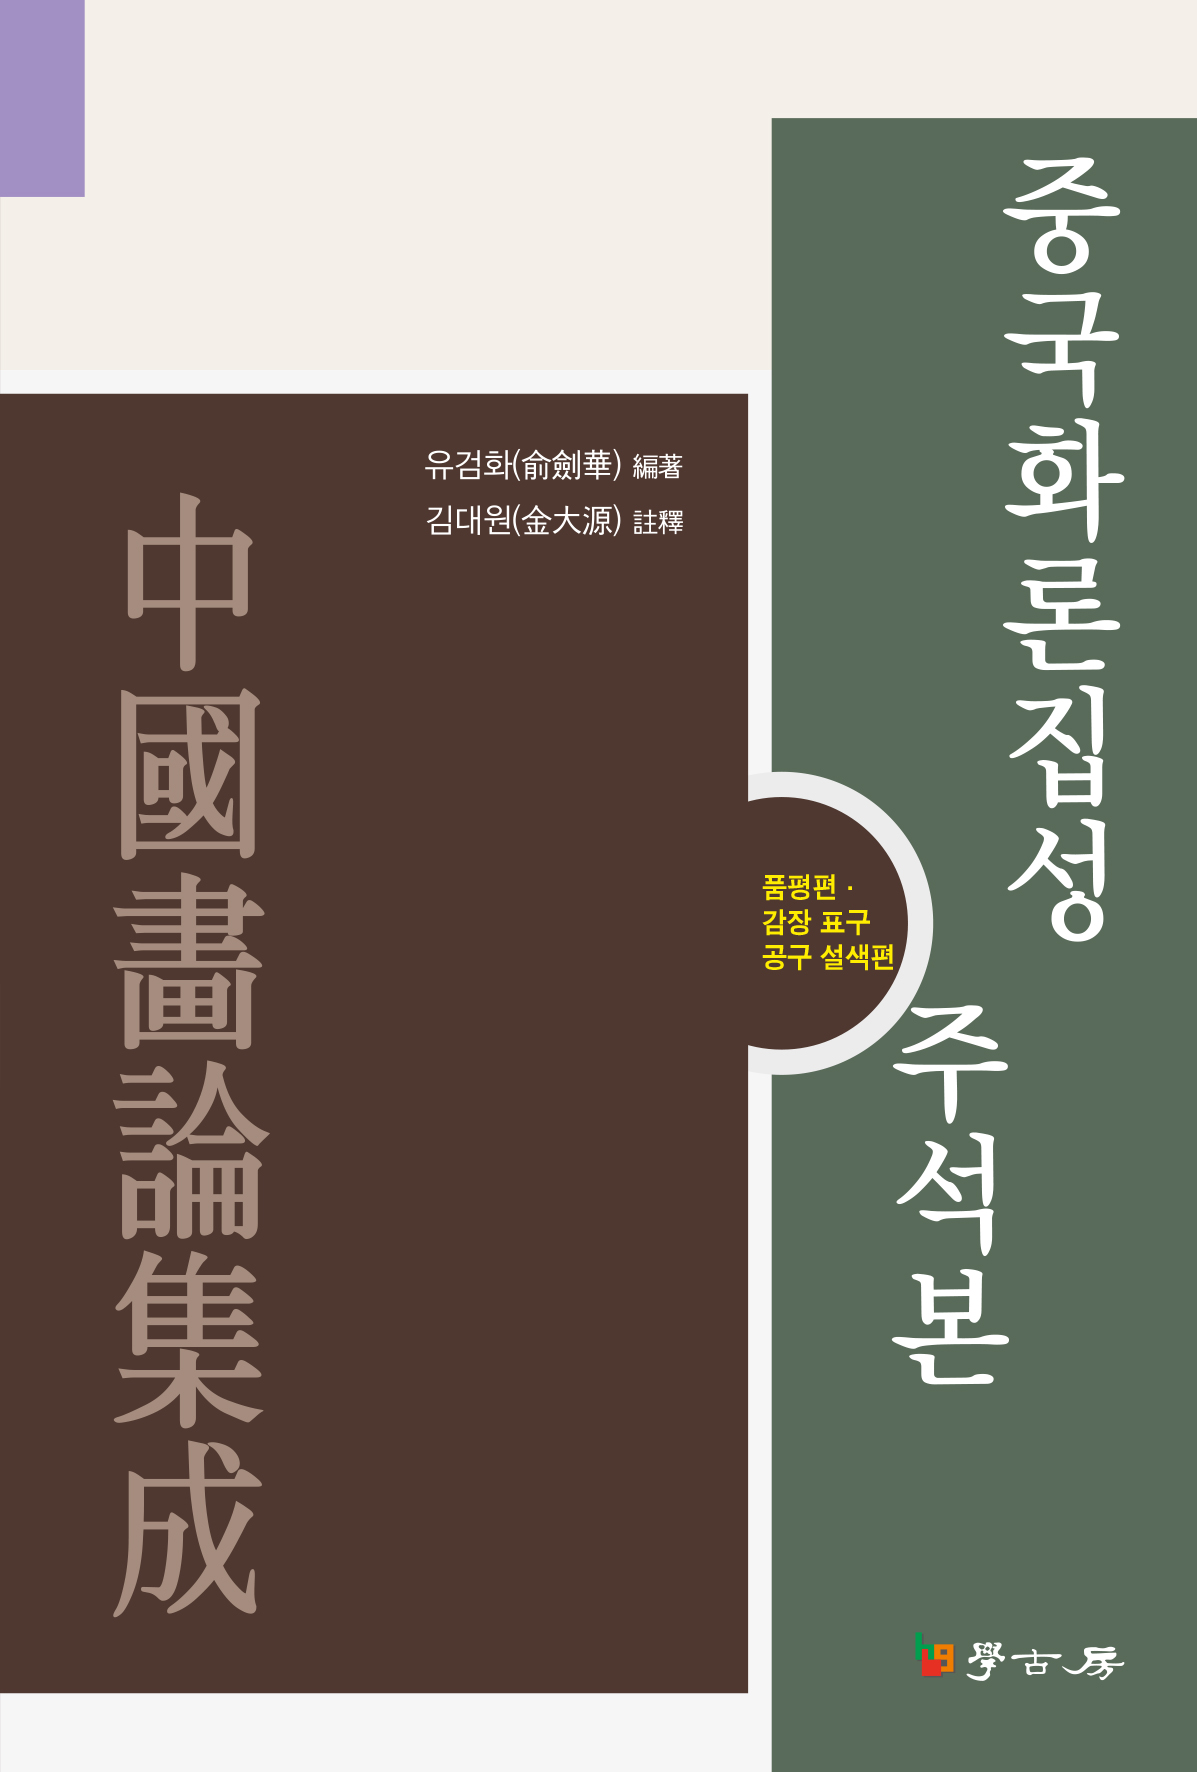 중국화론집성 주석본: 품평편 감장 표구 공구 설색편